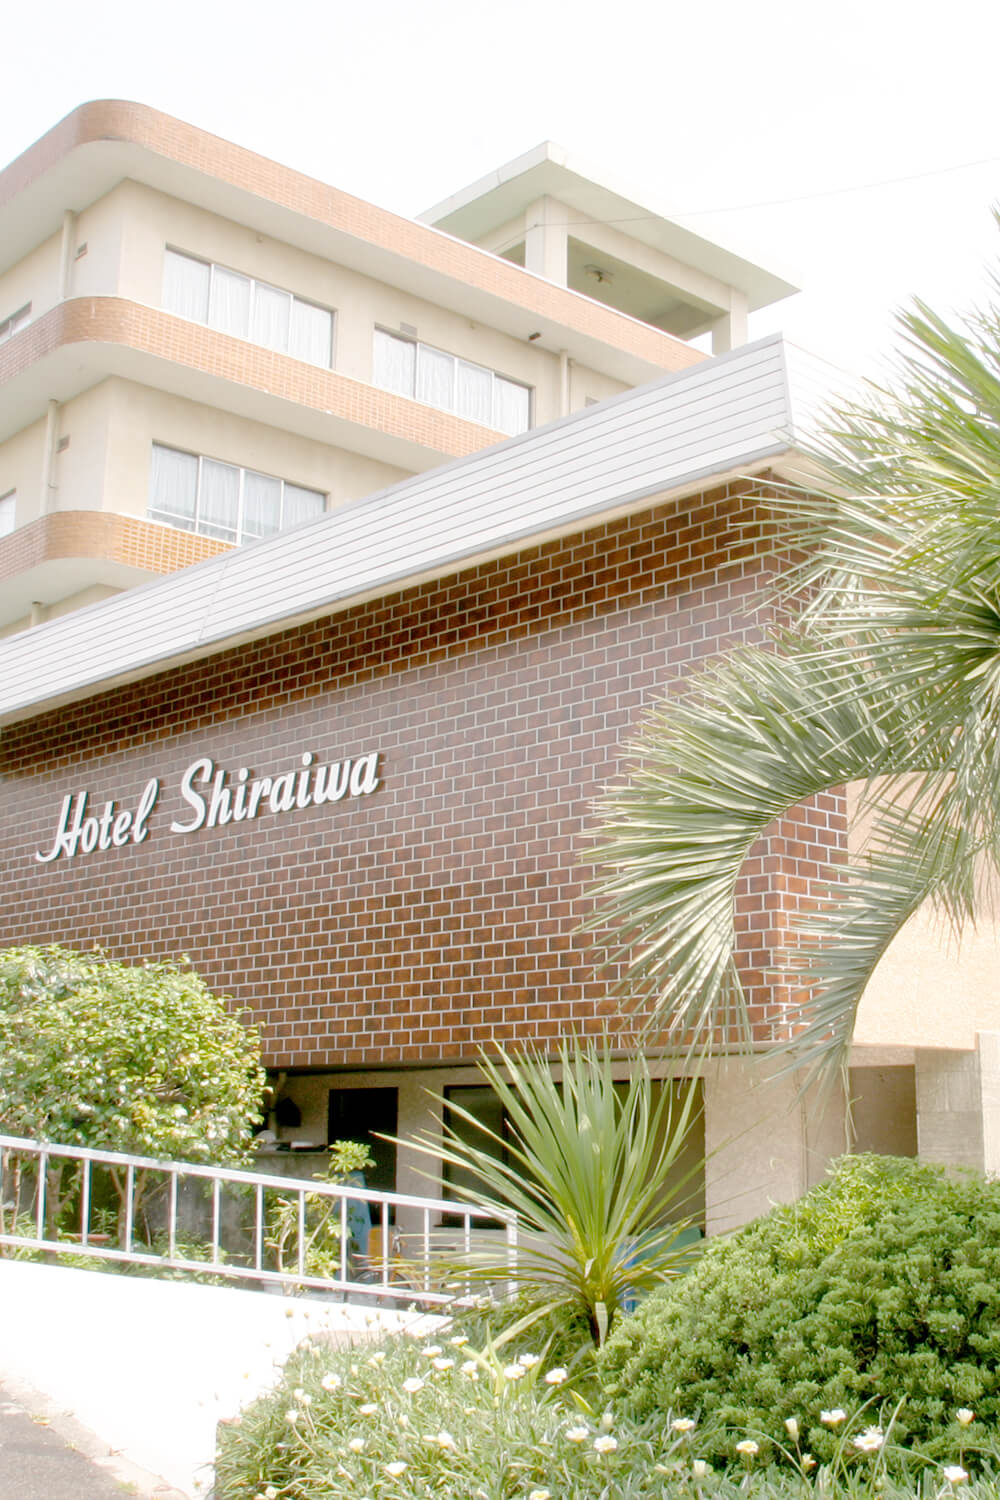 HOTEL SHIRAIWA